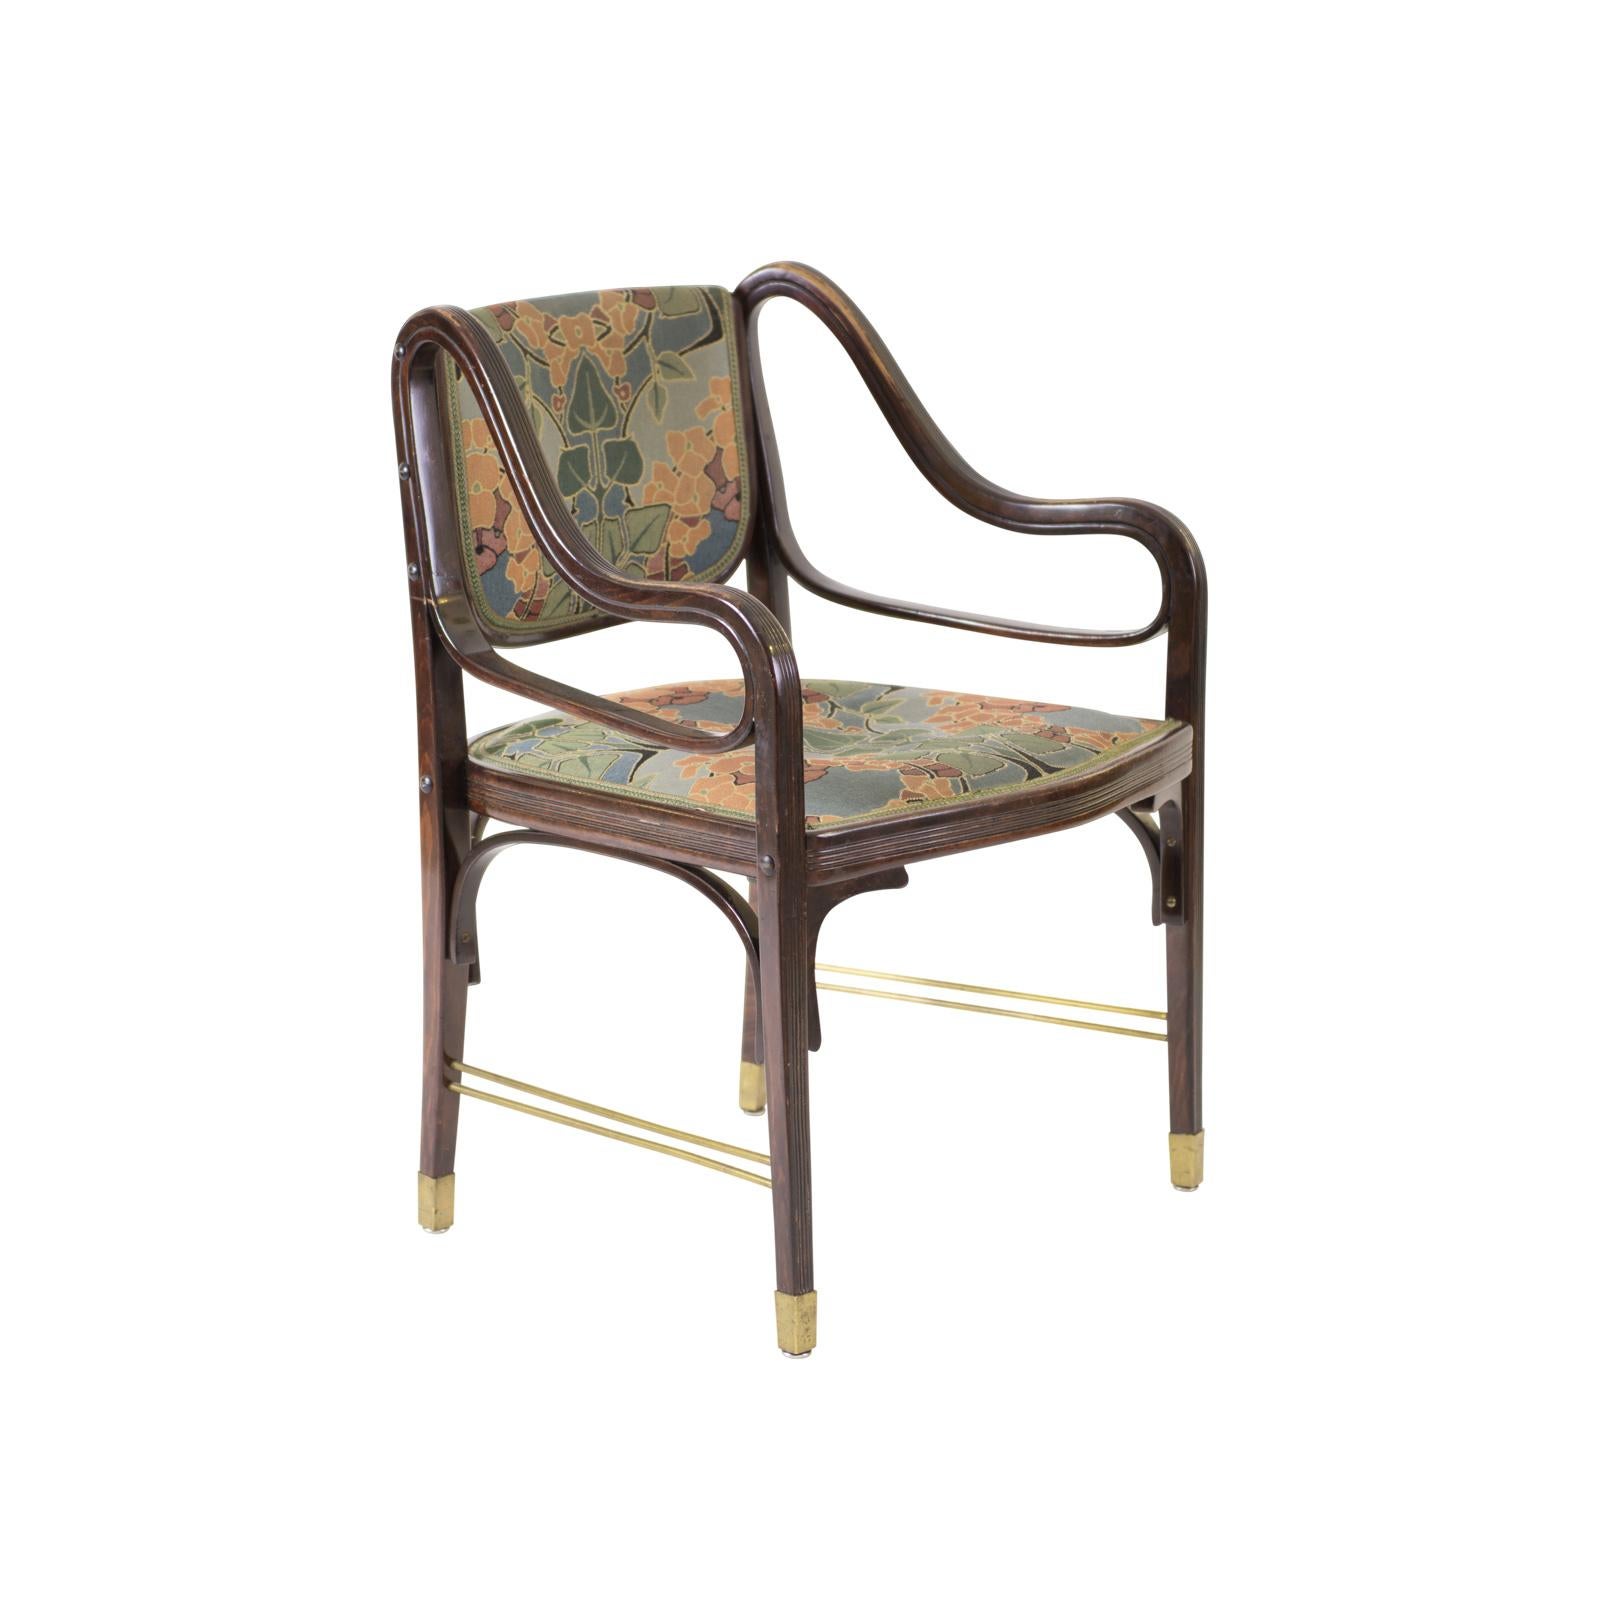 Pionnier et maître du Modernisme, Otto Wagner s'est emparé de la technique alors assez nouvelle du cintrage du bois pour concevoir ses meubles.
Parfois, ces meubles sont également attribués à Koloman Moser.
La conception de cet ensemble remonte à